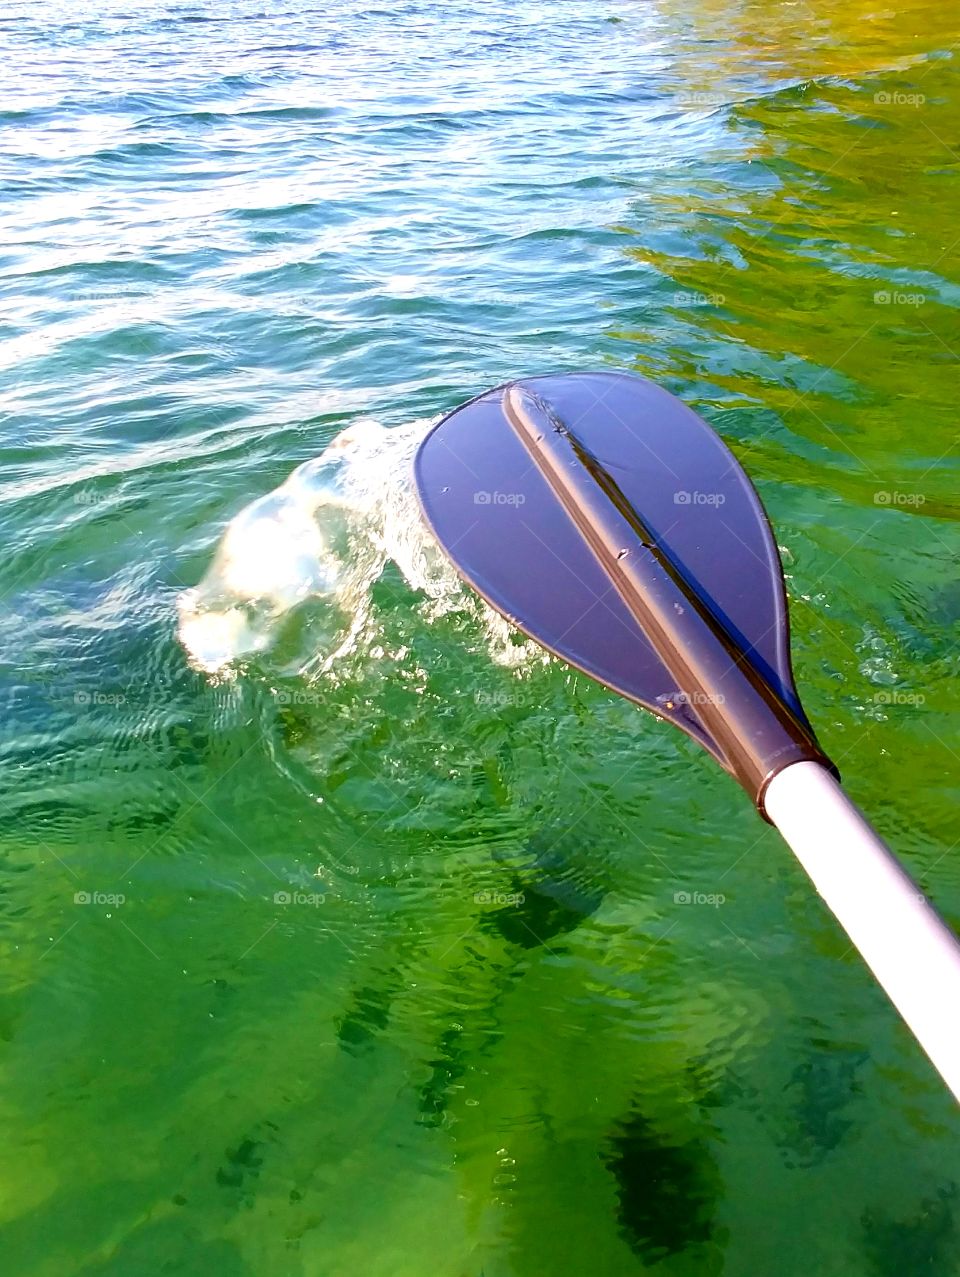 My oar kicks up the salty water.